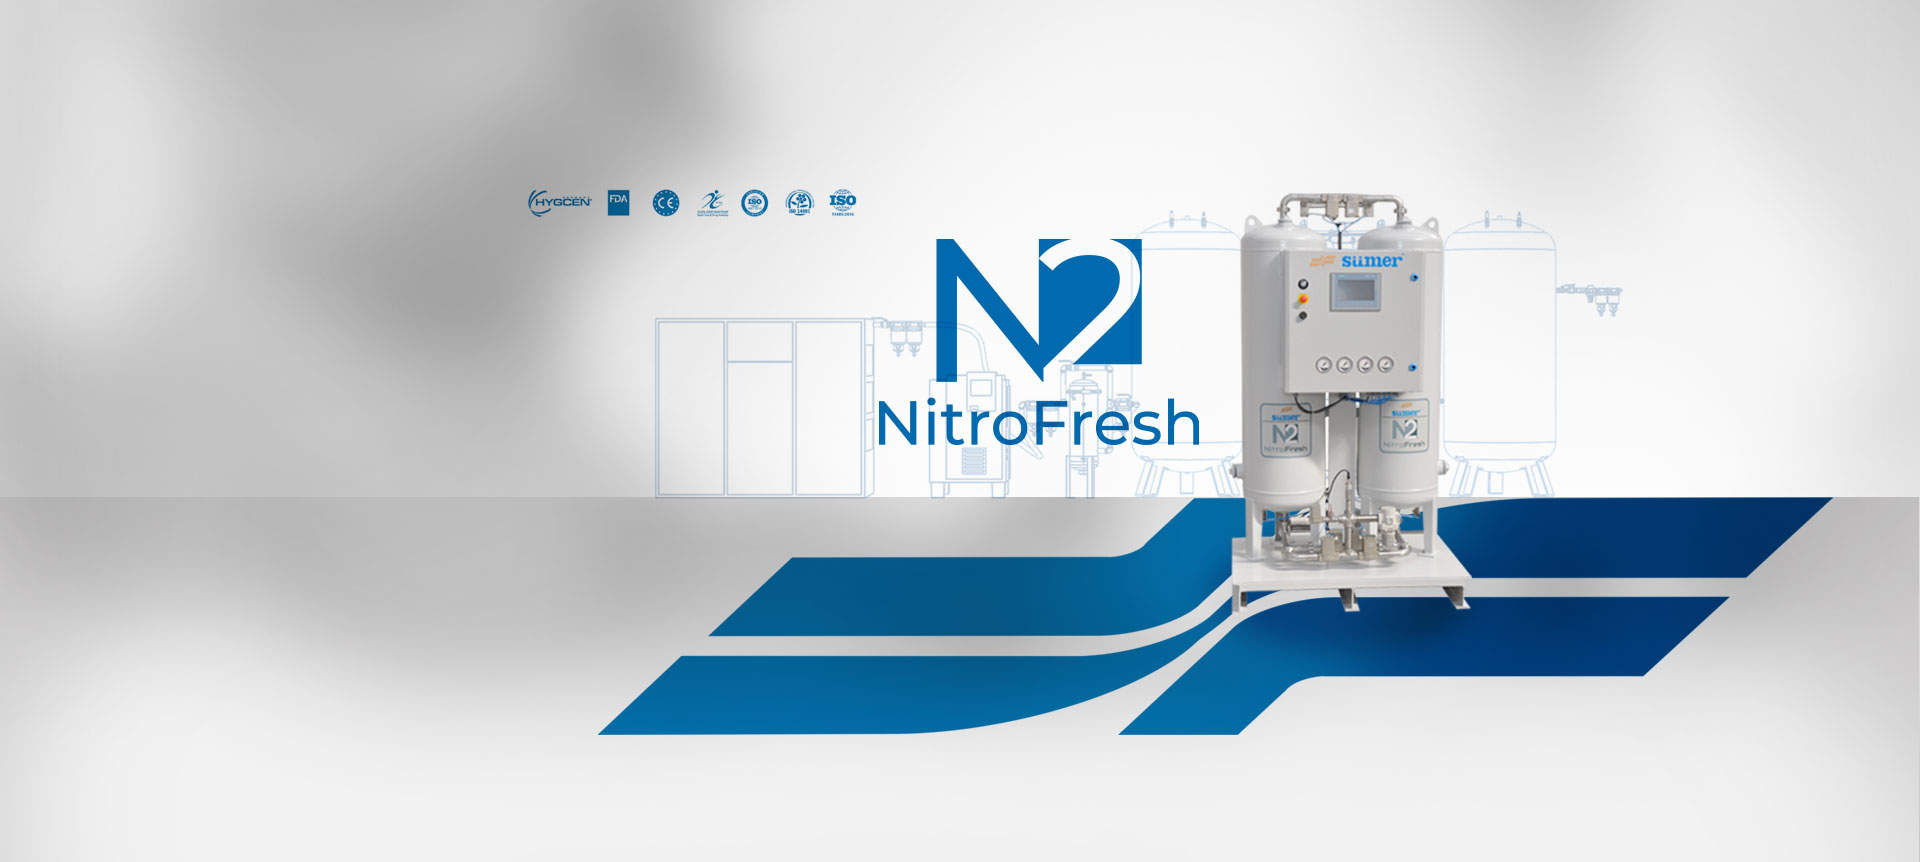 NitroFresh Generadores de Nitrógeno